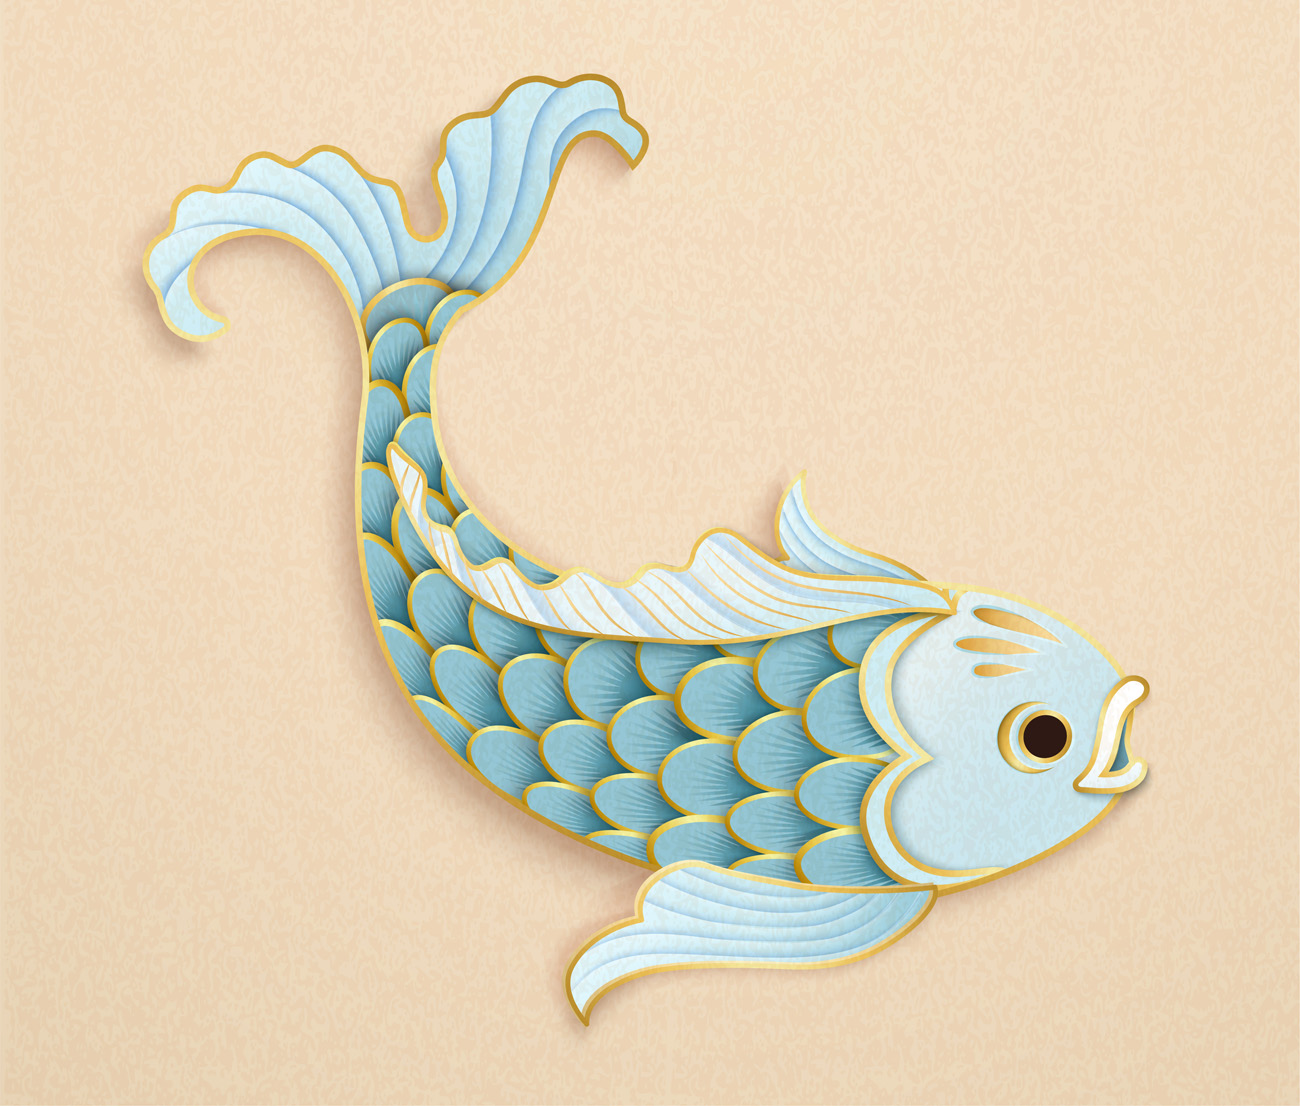 剪纸艺术风格的浅蓝色金鱼和金元宝中国风元素新年传统横幅海报矢